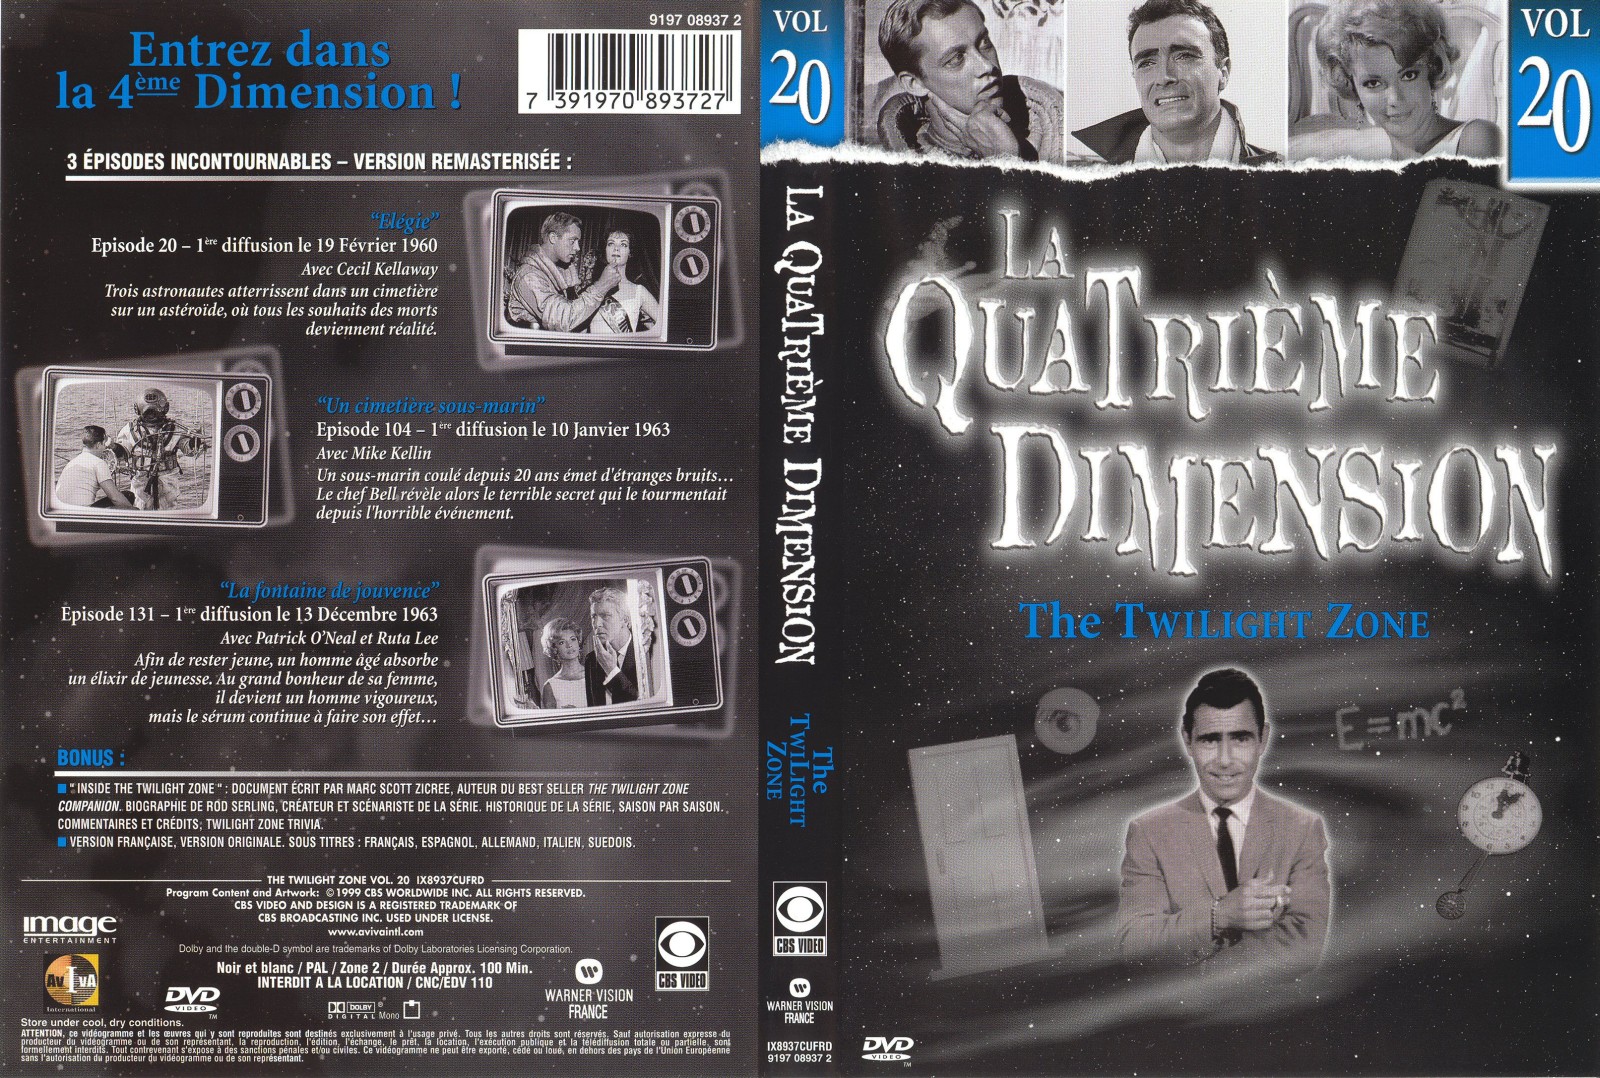 Jaquette DVD La quatrieme dimension vol 20